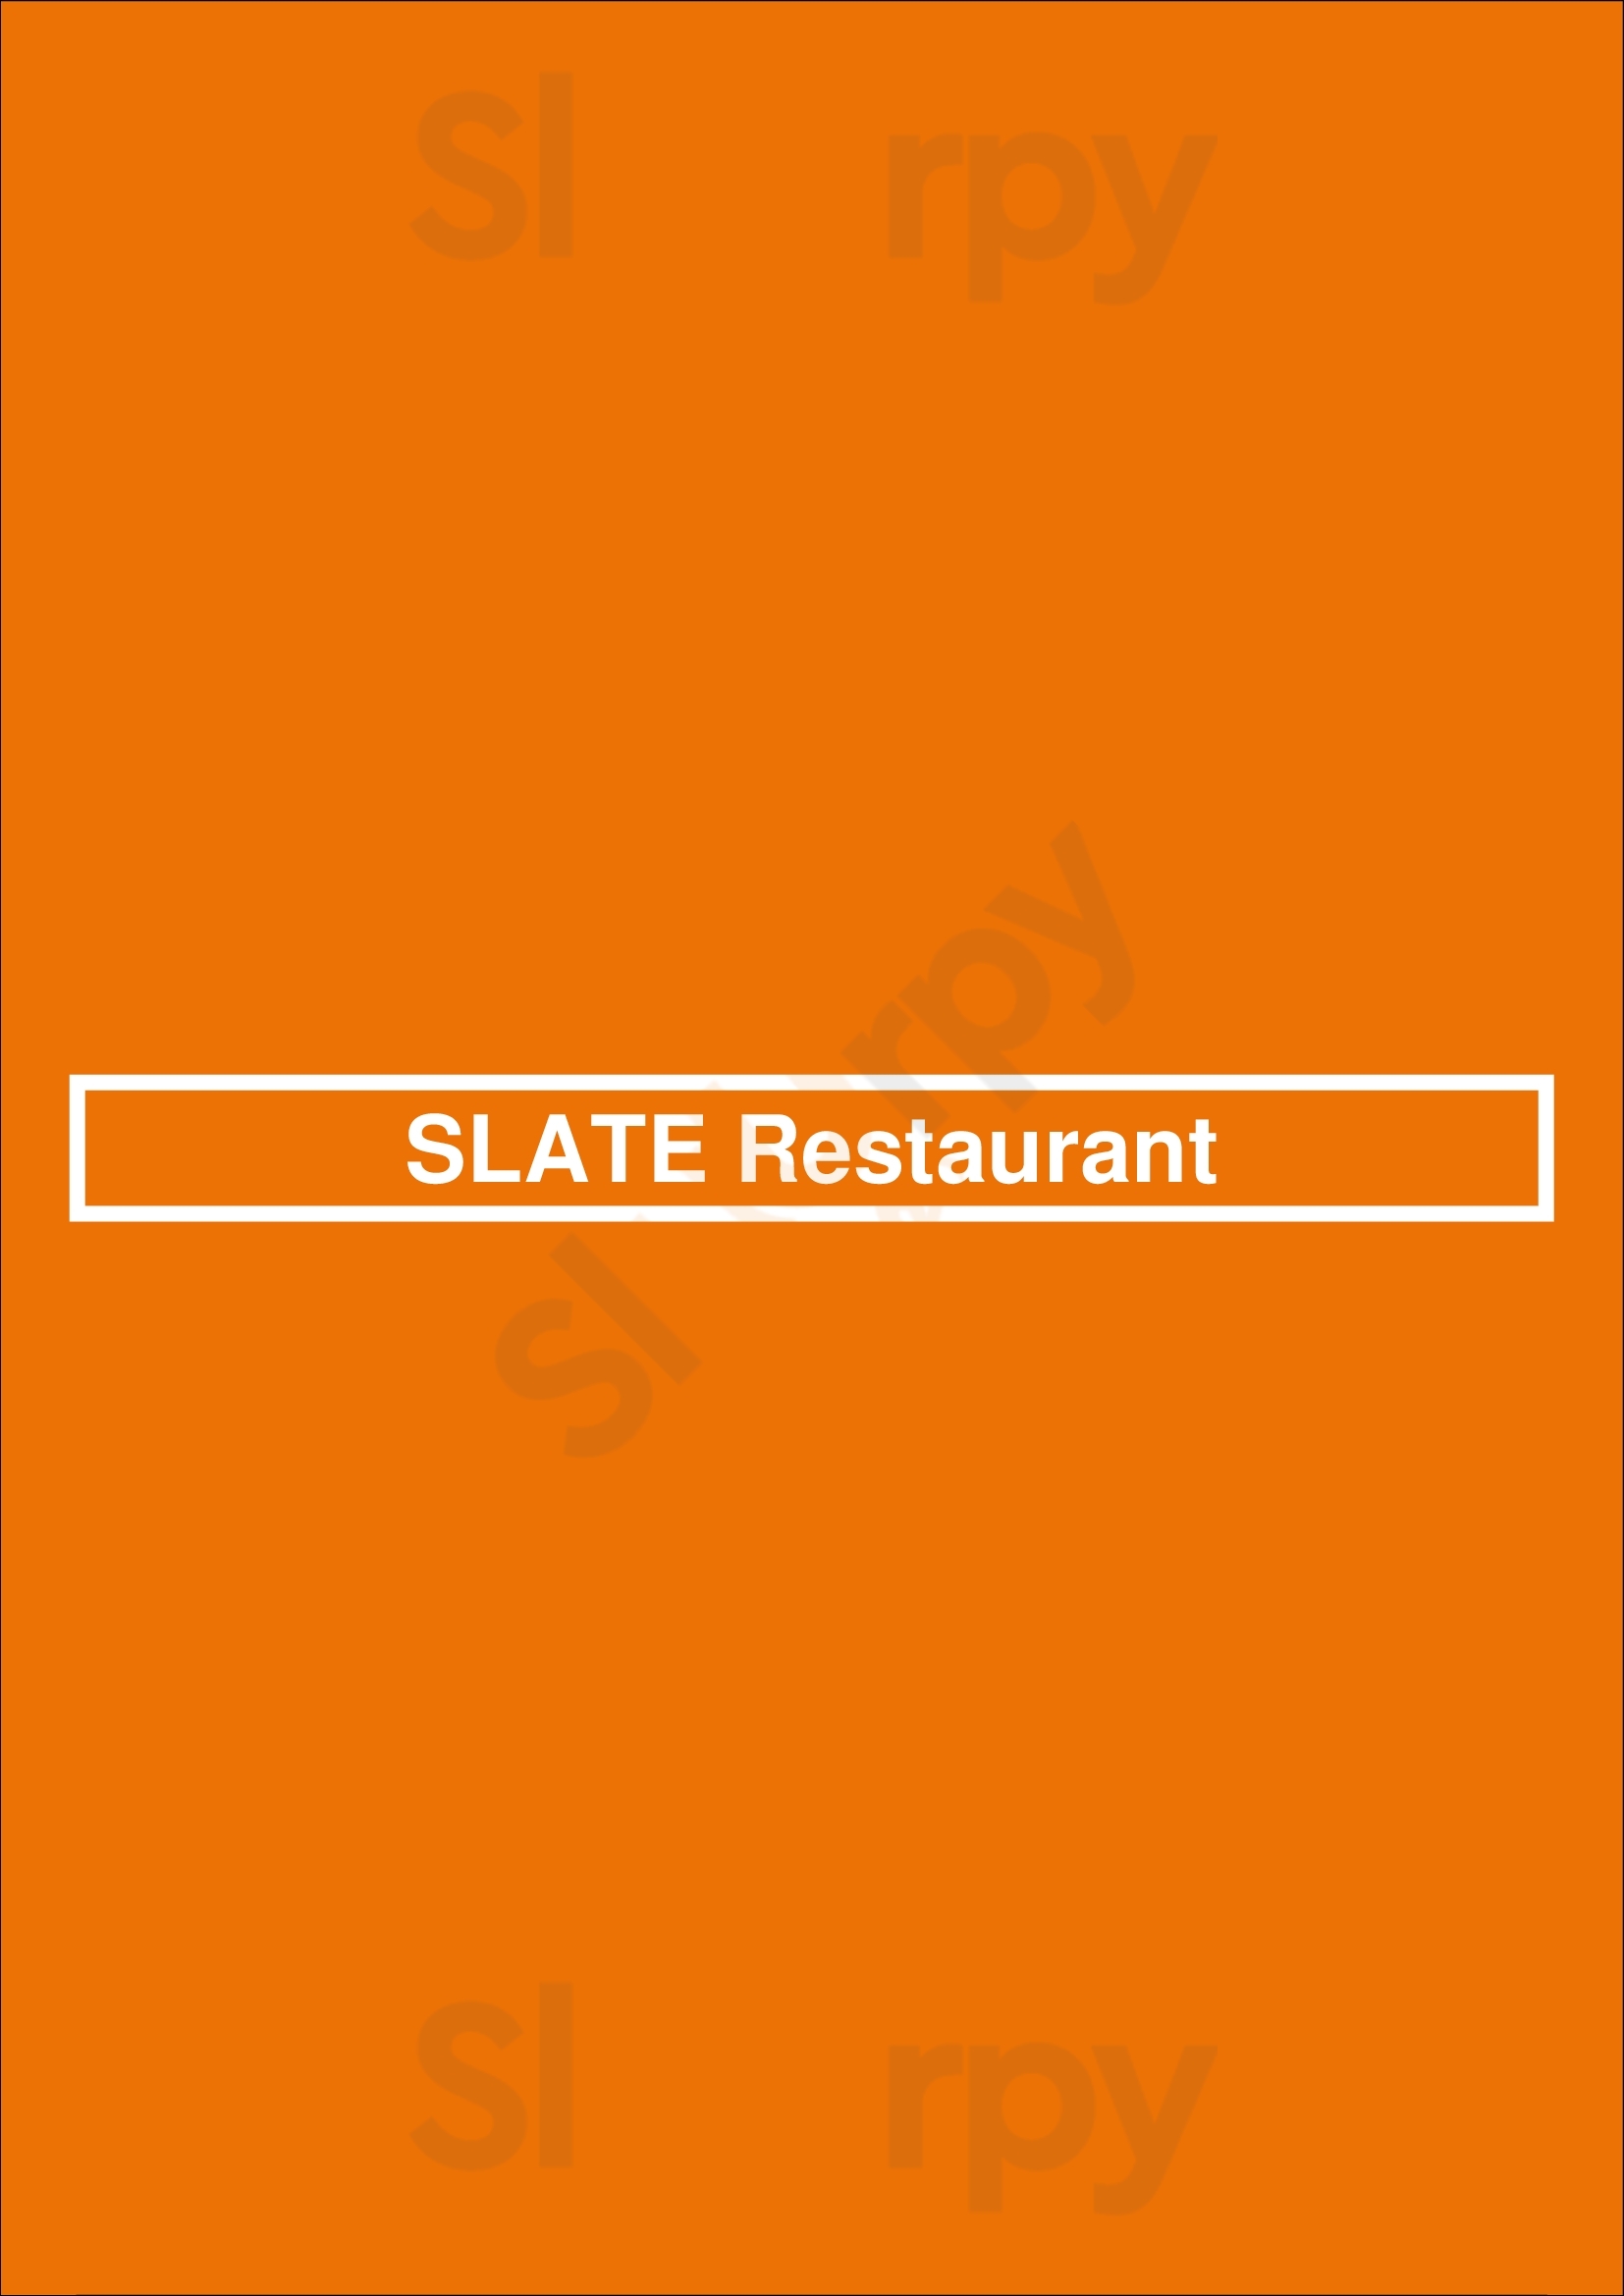 Slate Restaurant Orlando Menu - 1